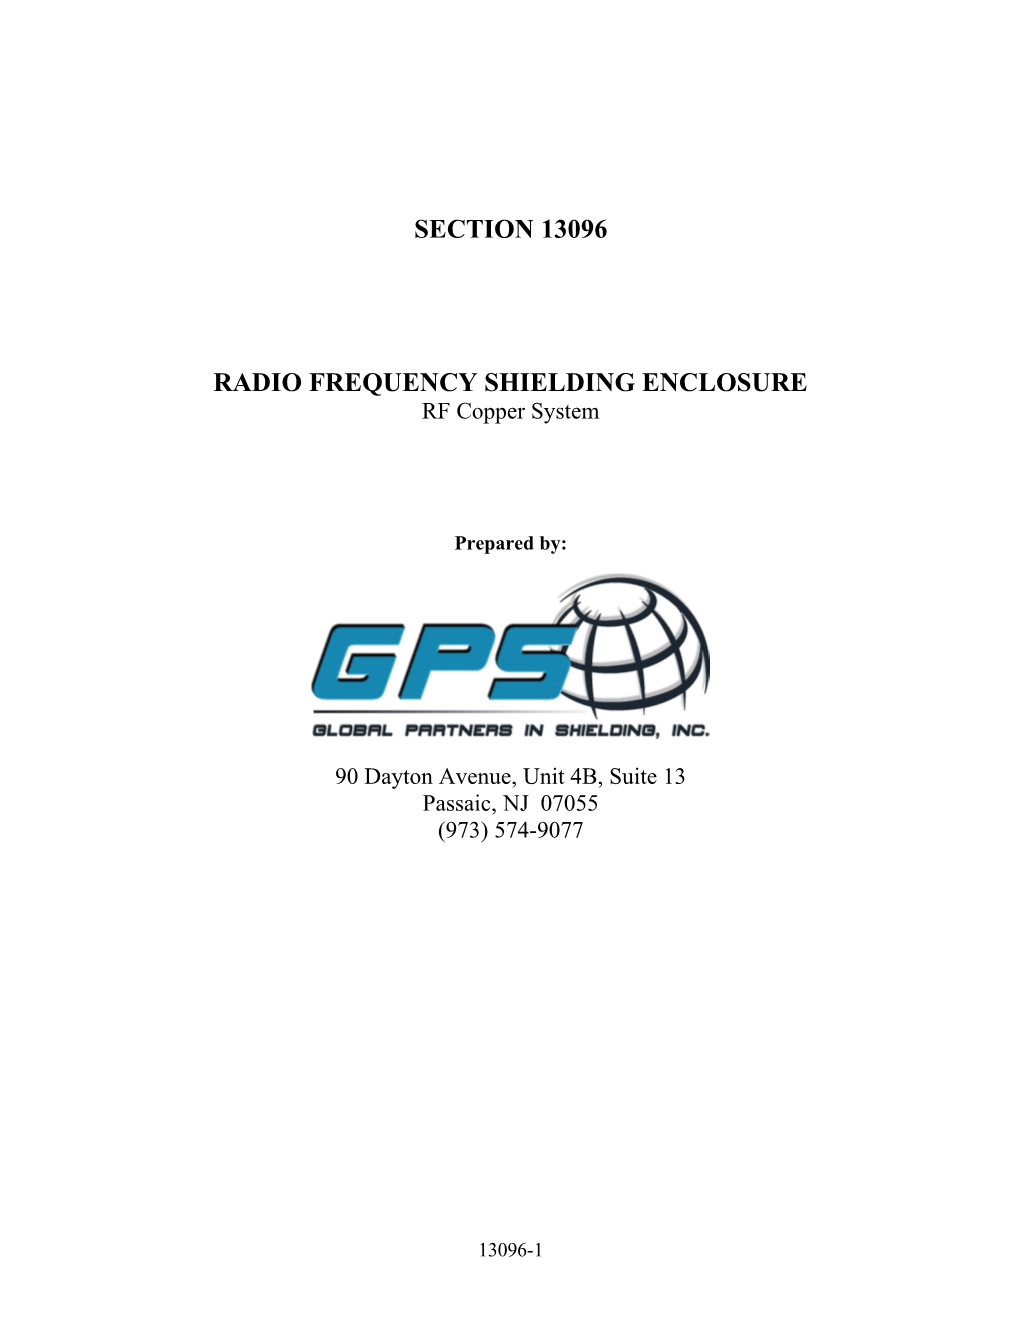 Radio Frequency Shielding Enclosure